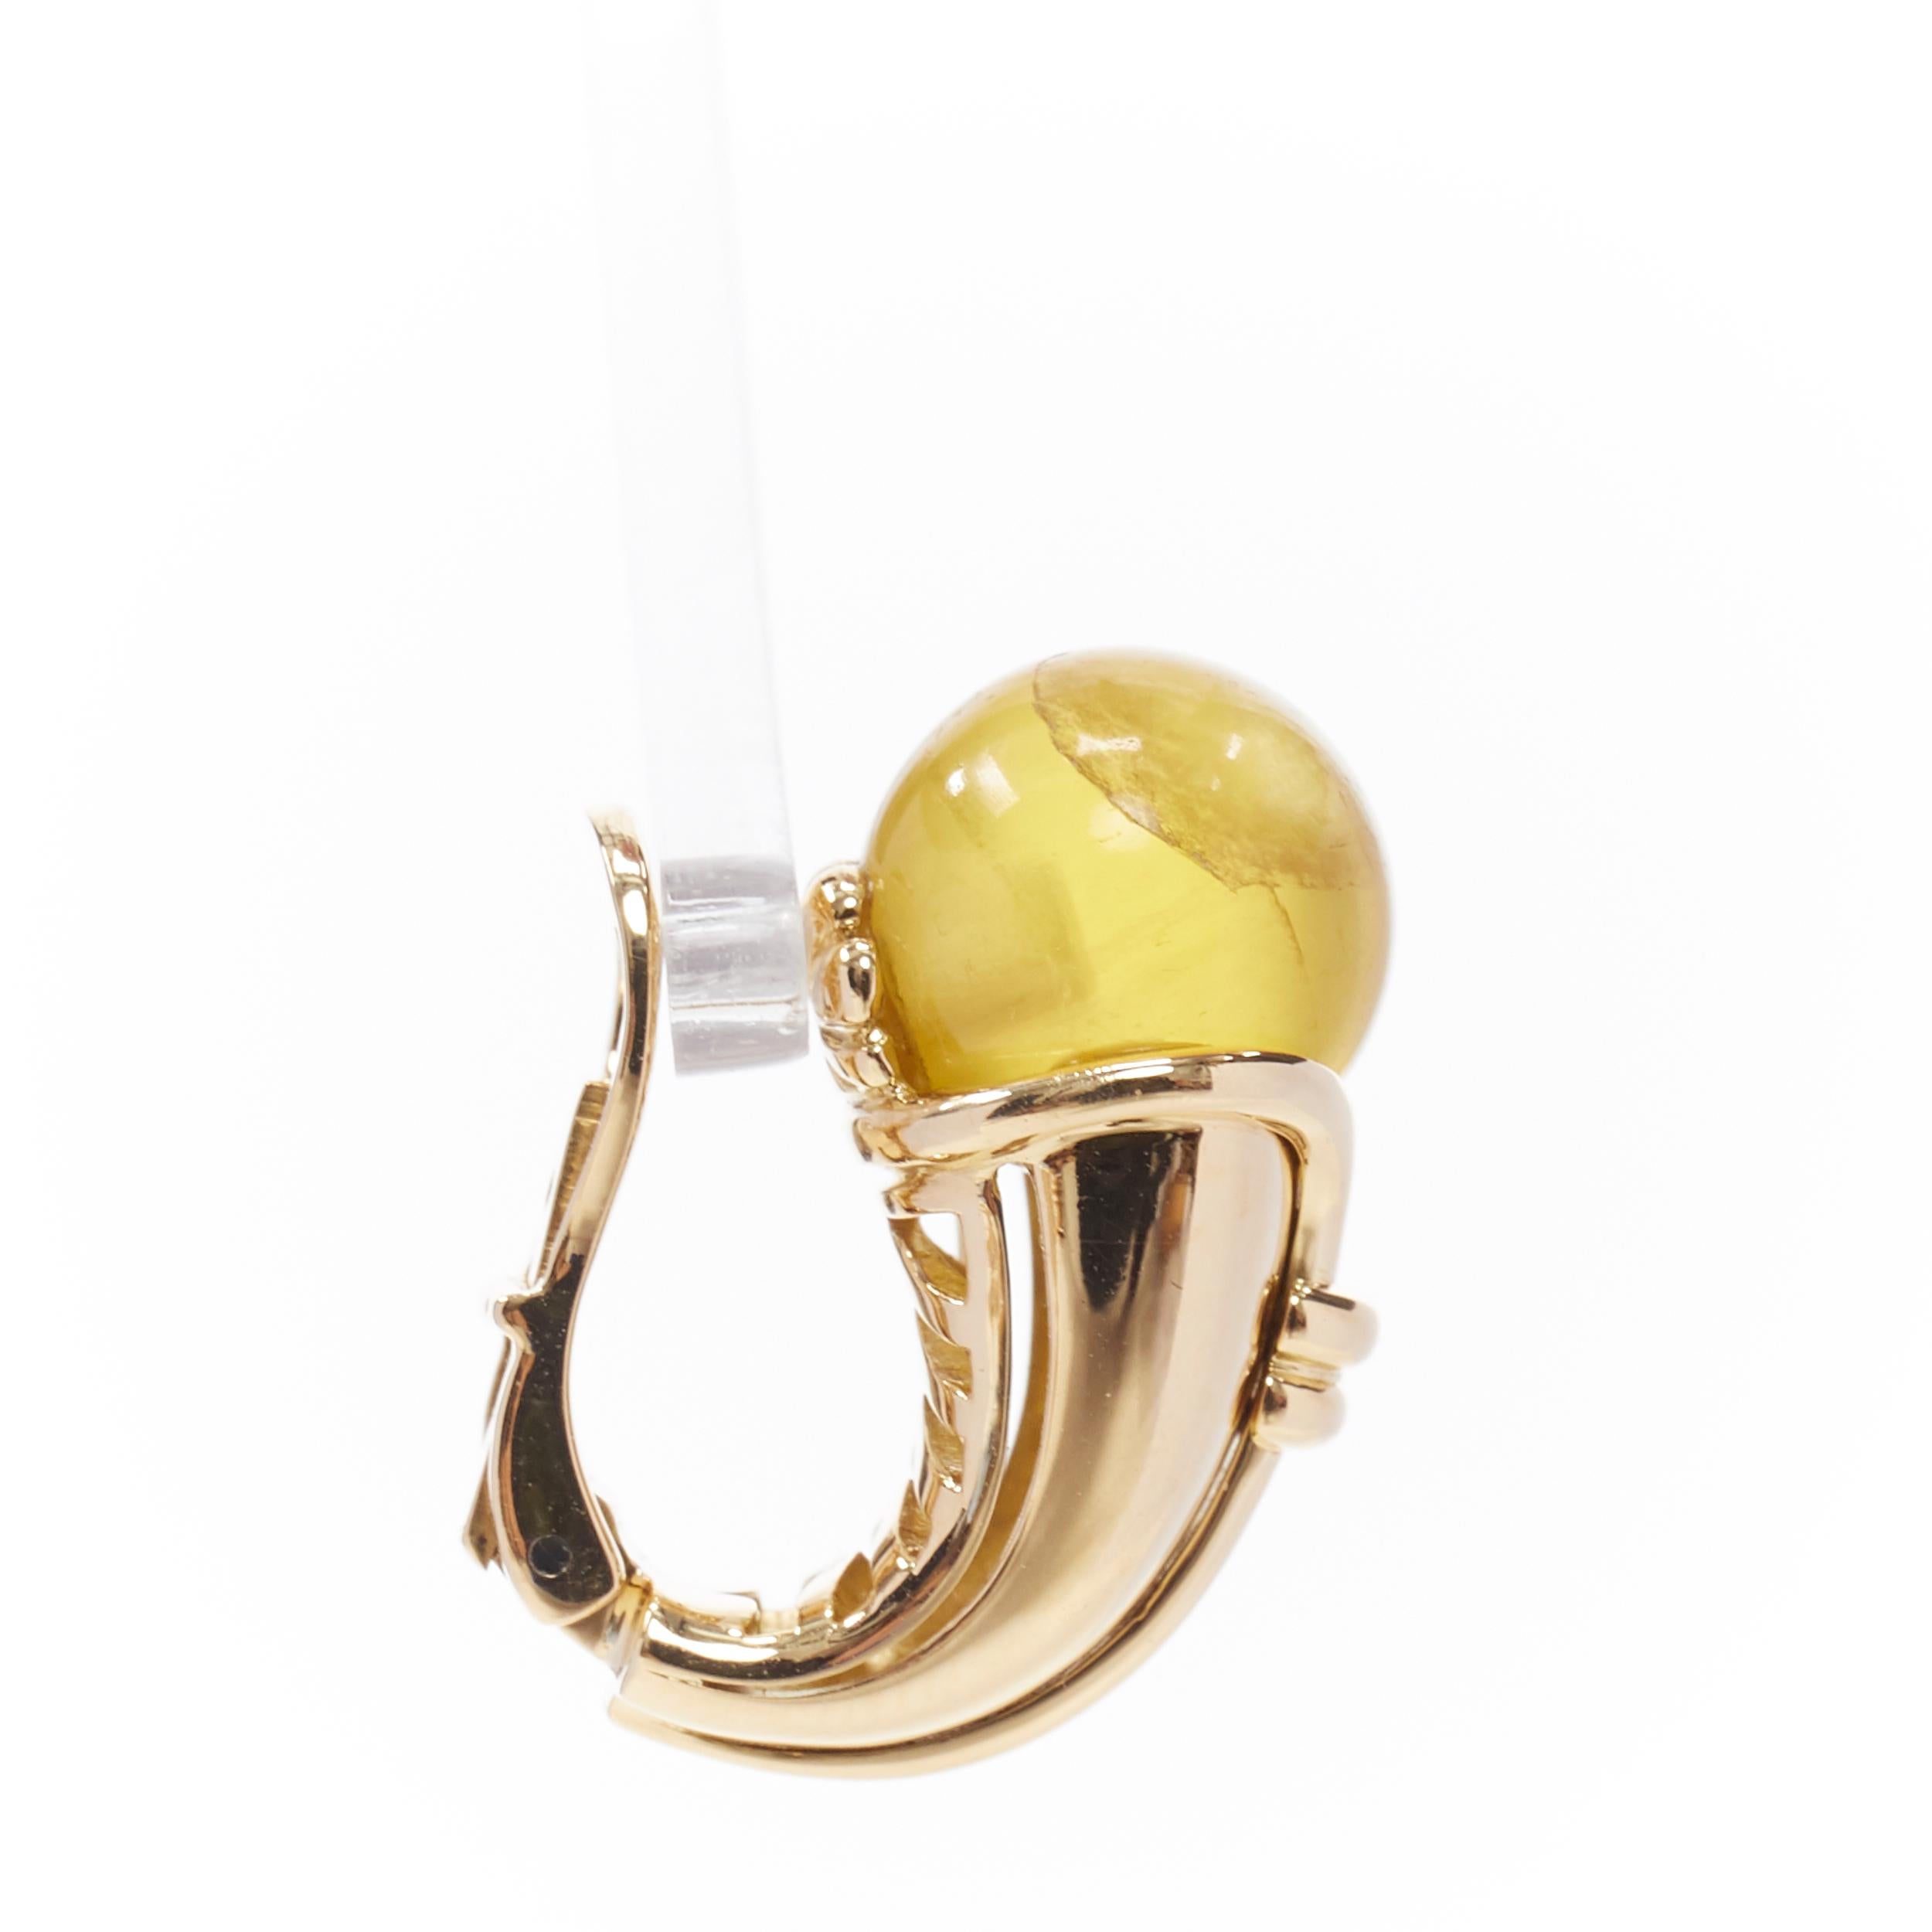 Beige vintage BULGARI JEWELLERY 18k yellow gold yellow gem stone ear clip earring